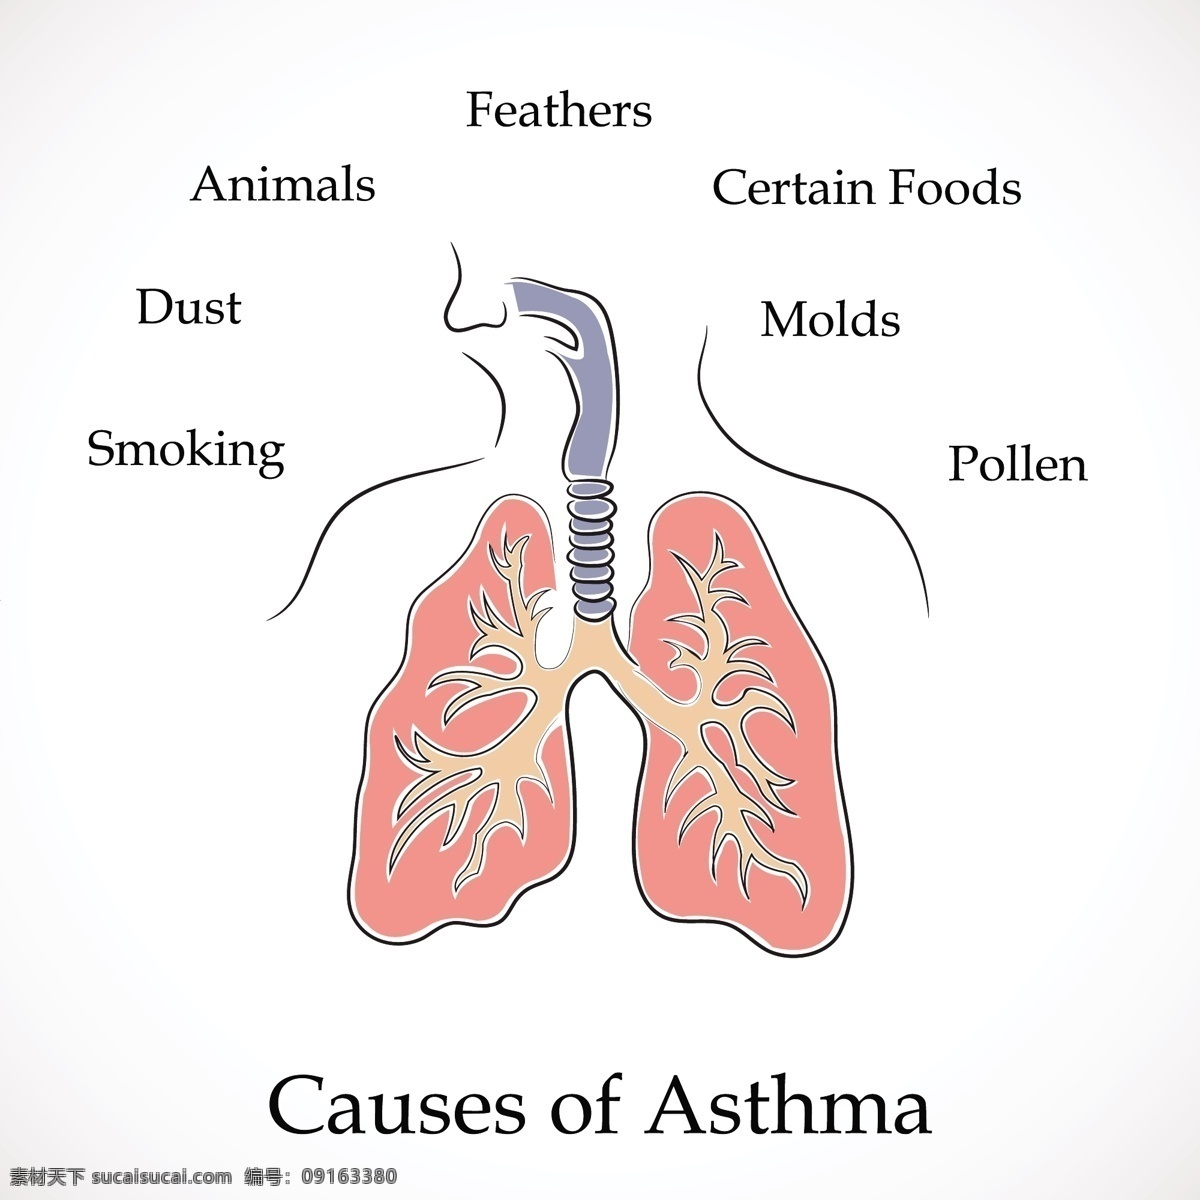 哮喘 矢量 世界 日 原因 动物 吸烟 羽毛 导致哮喘 某些食物 一天 灰尘 花粉 霉菌 哮喘的世界 世界哮喘日 矢量图 其他矢量图